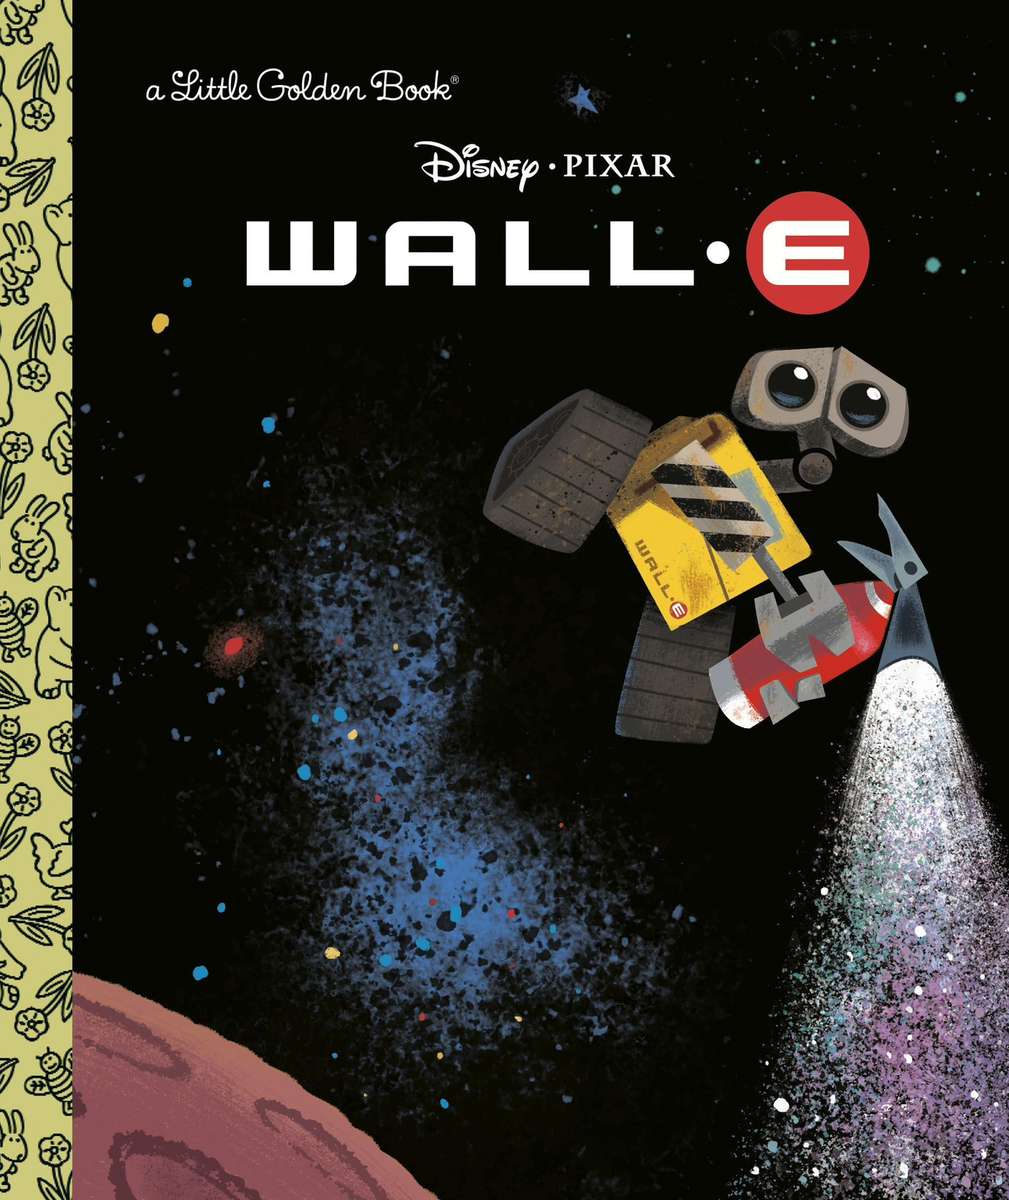 Wall-E (A Little Golden Book) jigsaw puzzle online